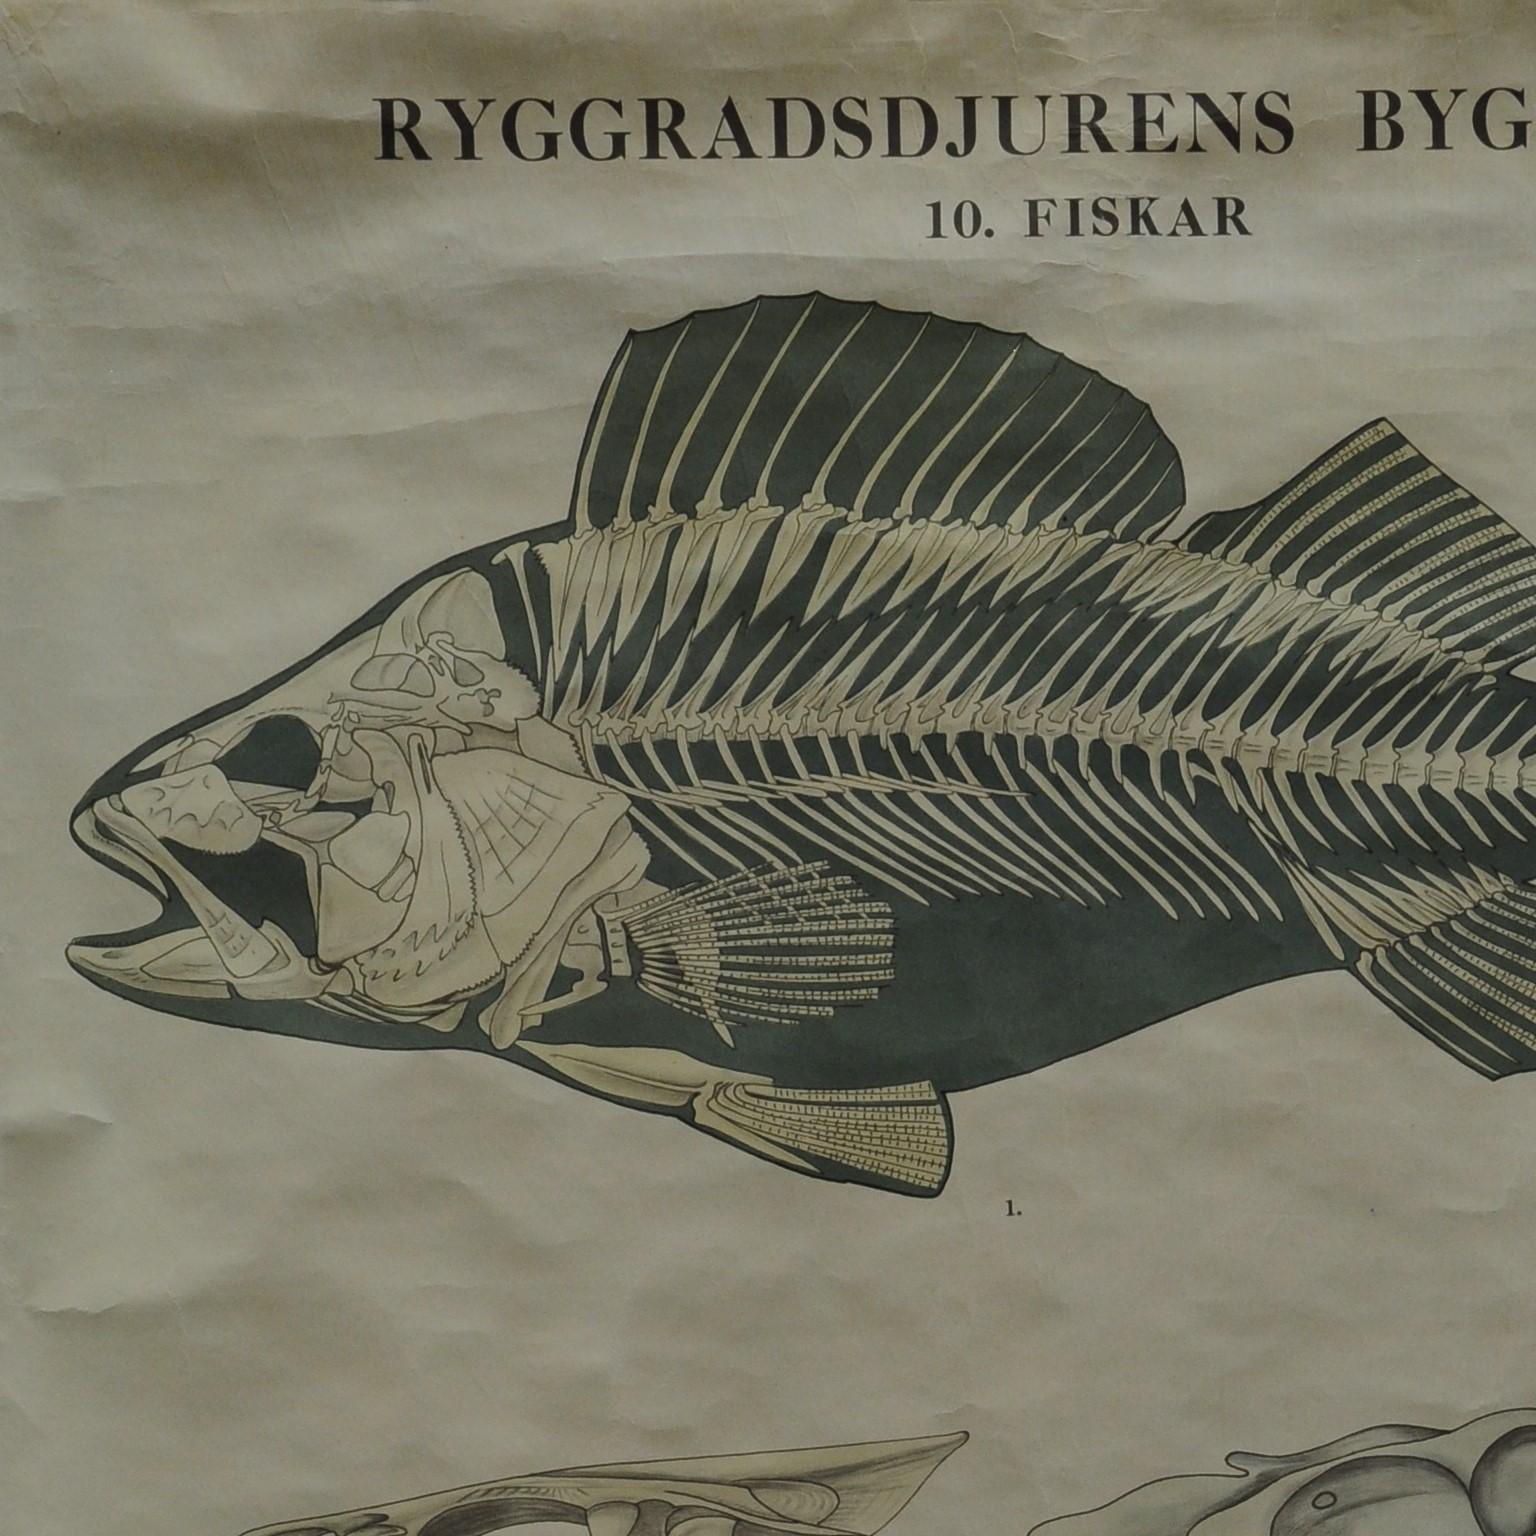 Die schwedische Wandtafel zeigt die Knochenstruktur eines Fisches. Schwarz-Weiß-Druck auf mit Leinwand verstärktem Papier. Herausgegeben von Ryggradsjurens Byggnad 10. fiskar.
Abmessungen:
Breite 70cm (27.56 inch)
Höhe 99 cm (38,98 Zoll)

Die